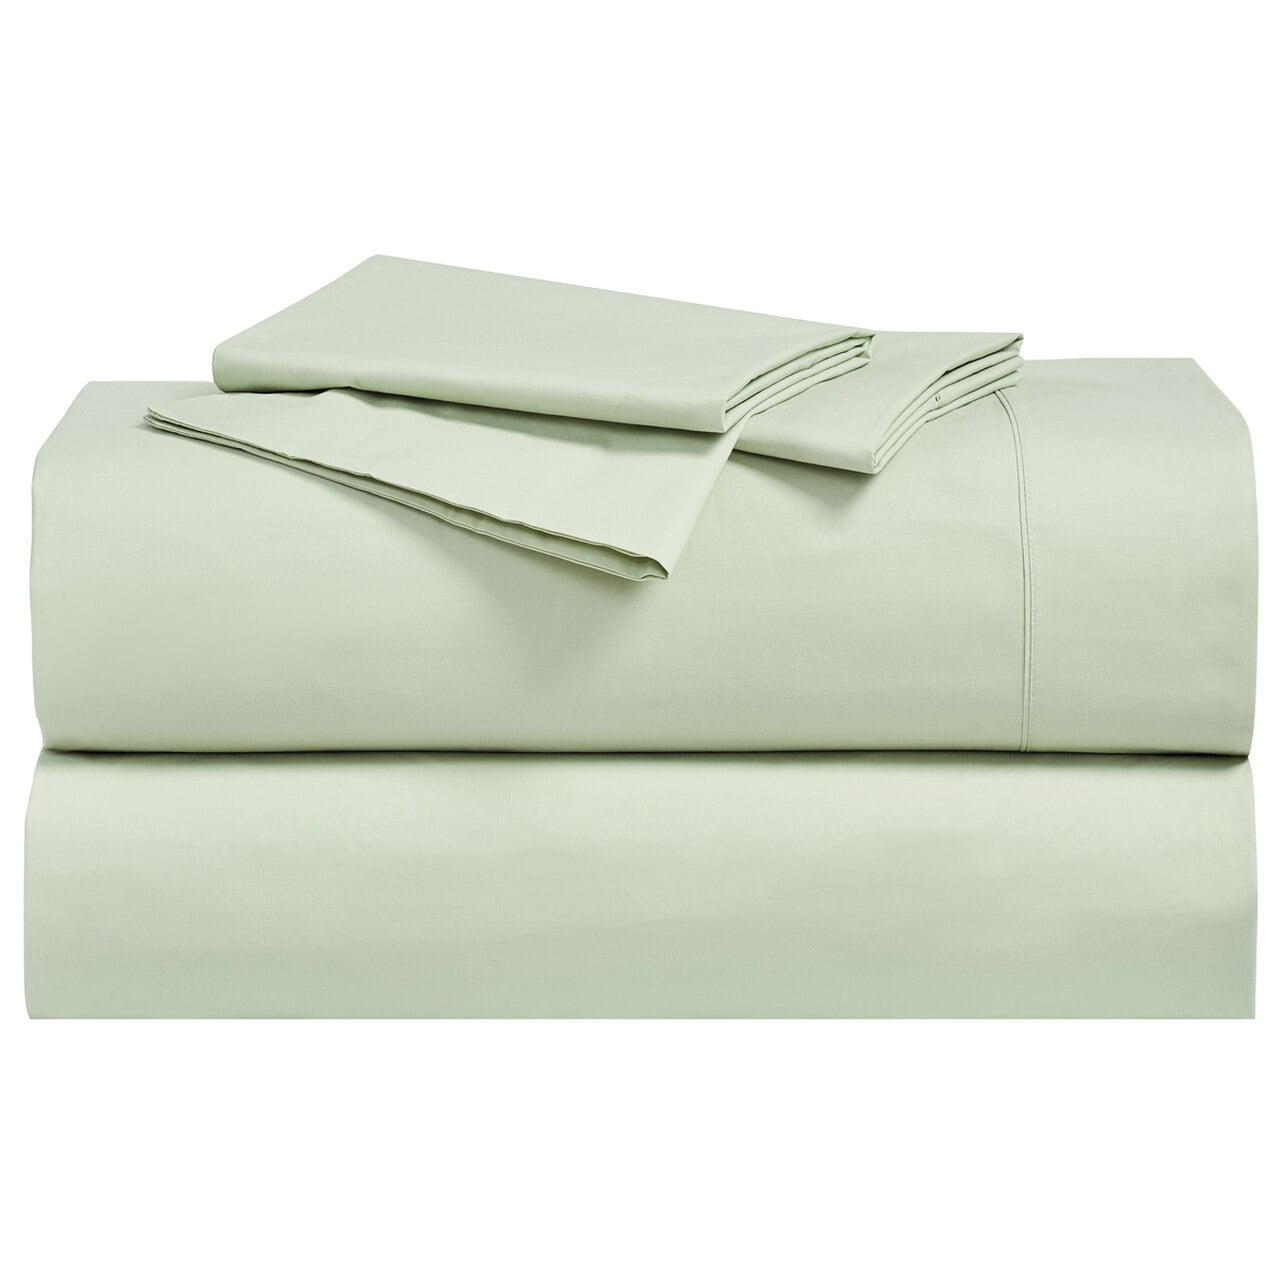 Abripedic Percale,Crispy Soft 100% Breathable Cotton Pillowcases 